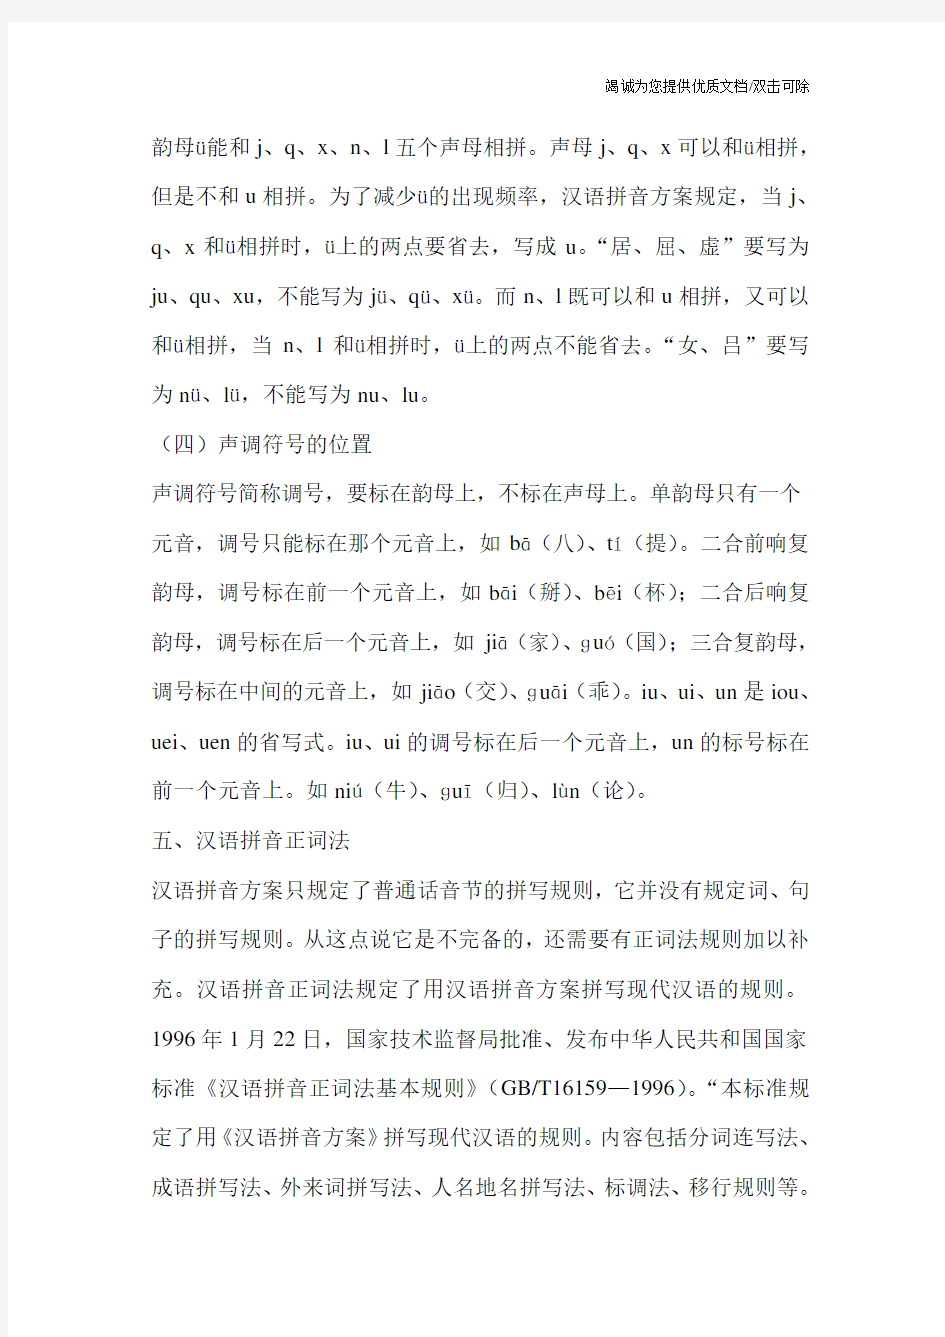 汉语拼音方案拼写规则